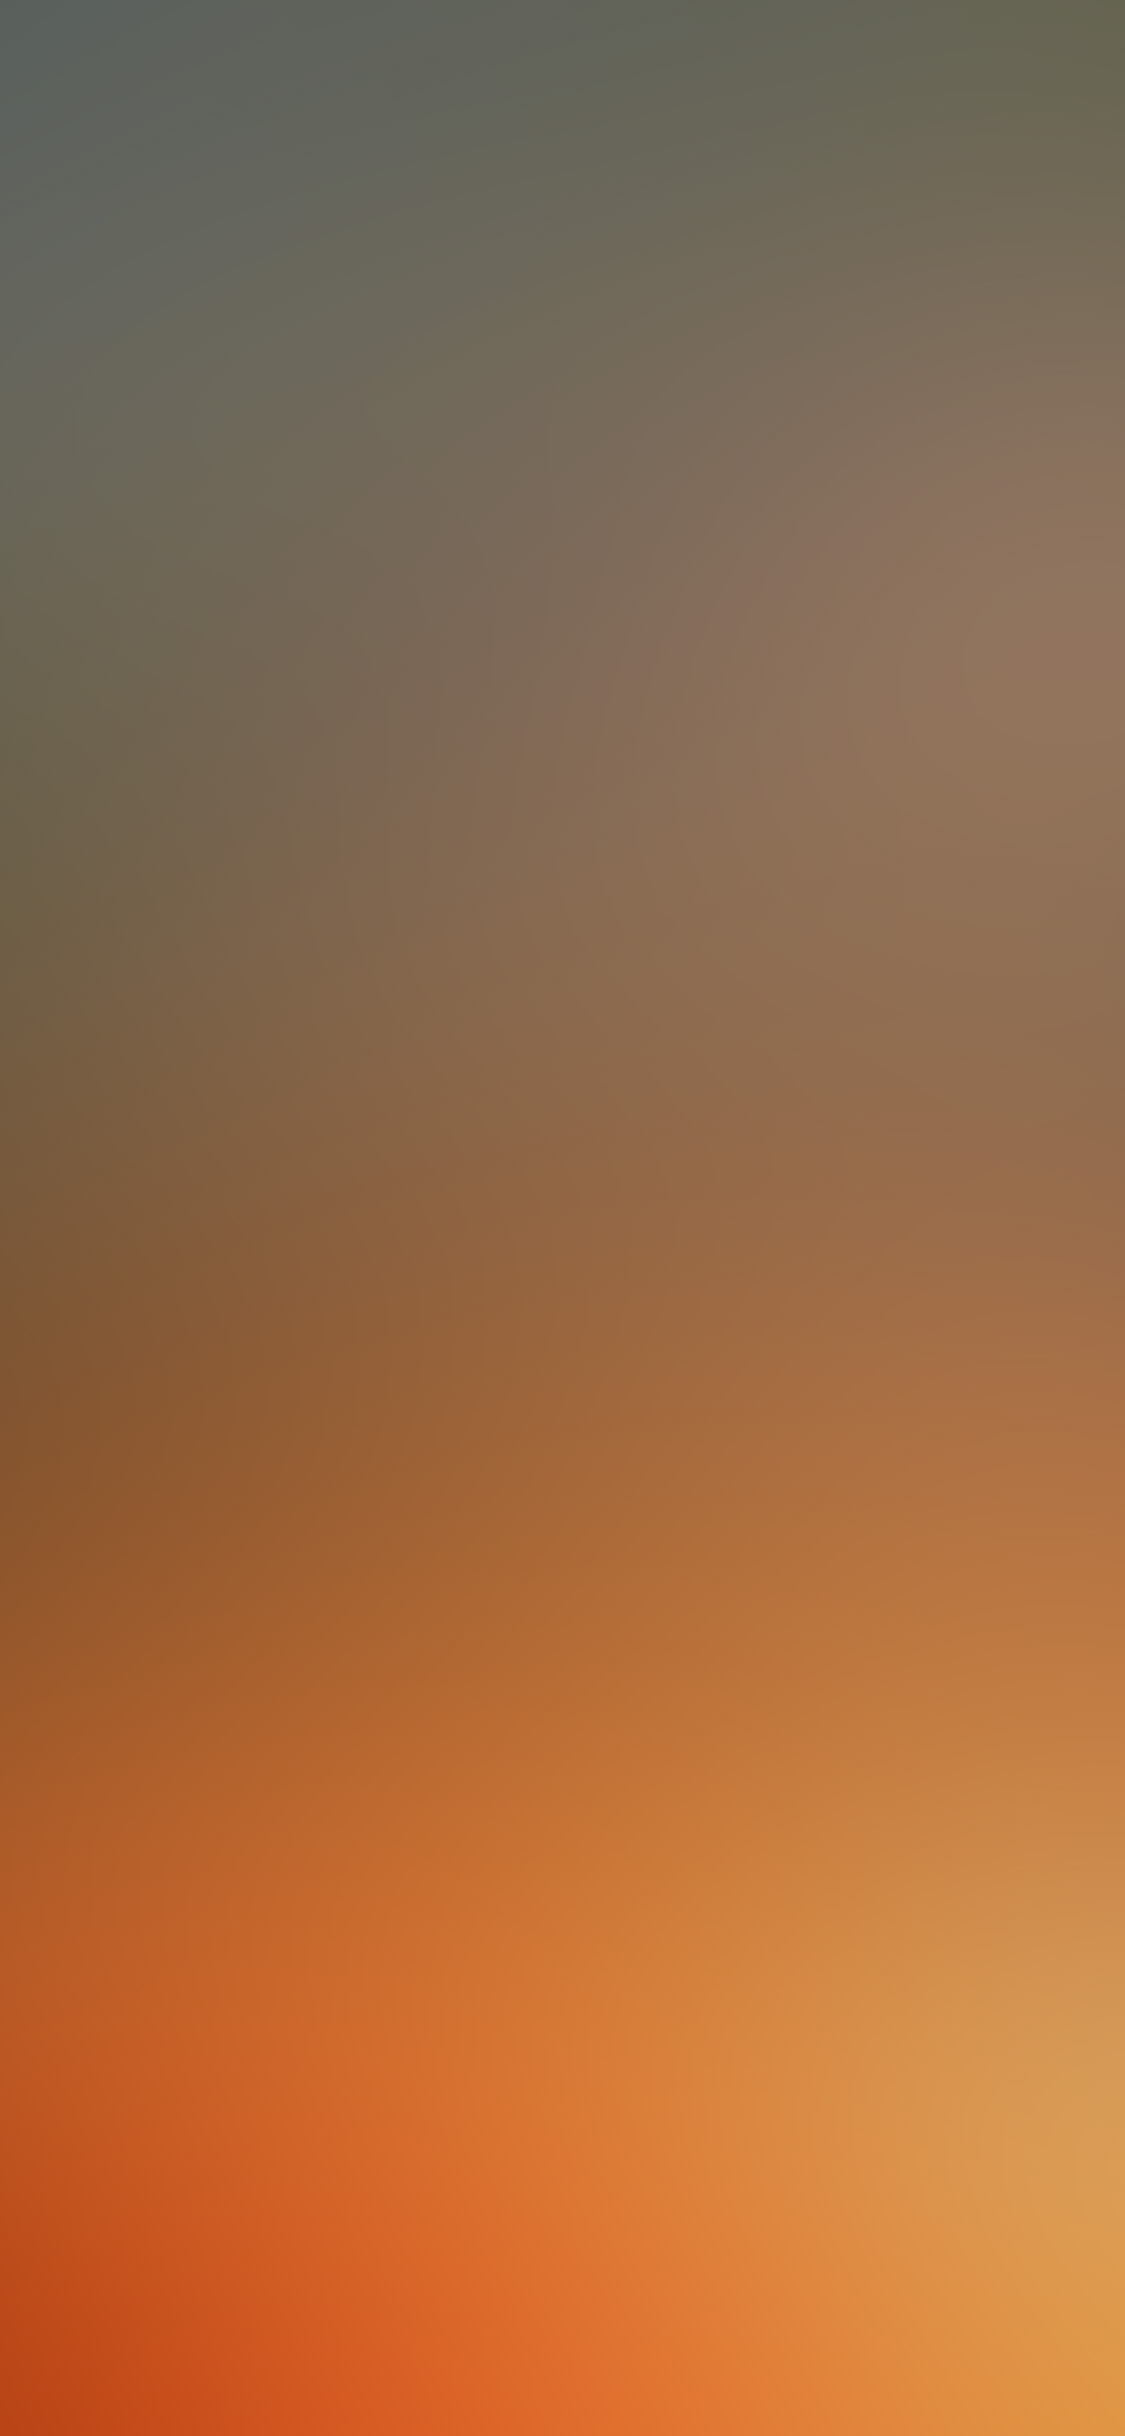 iPhone X wallpaper. gold sunset blur gradation